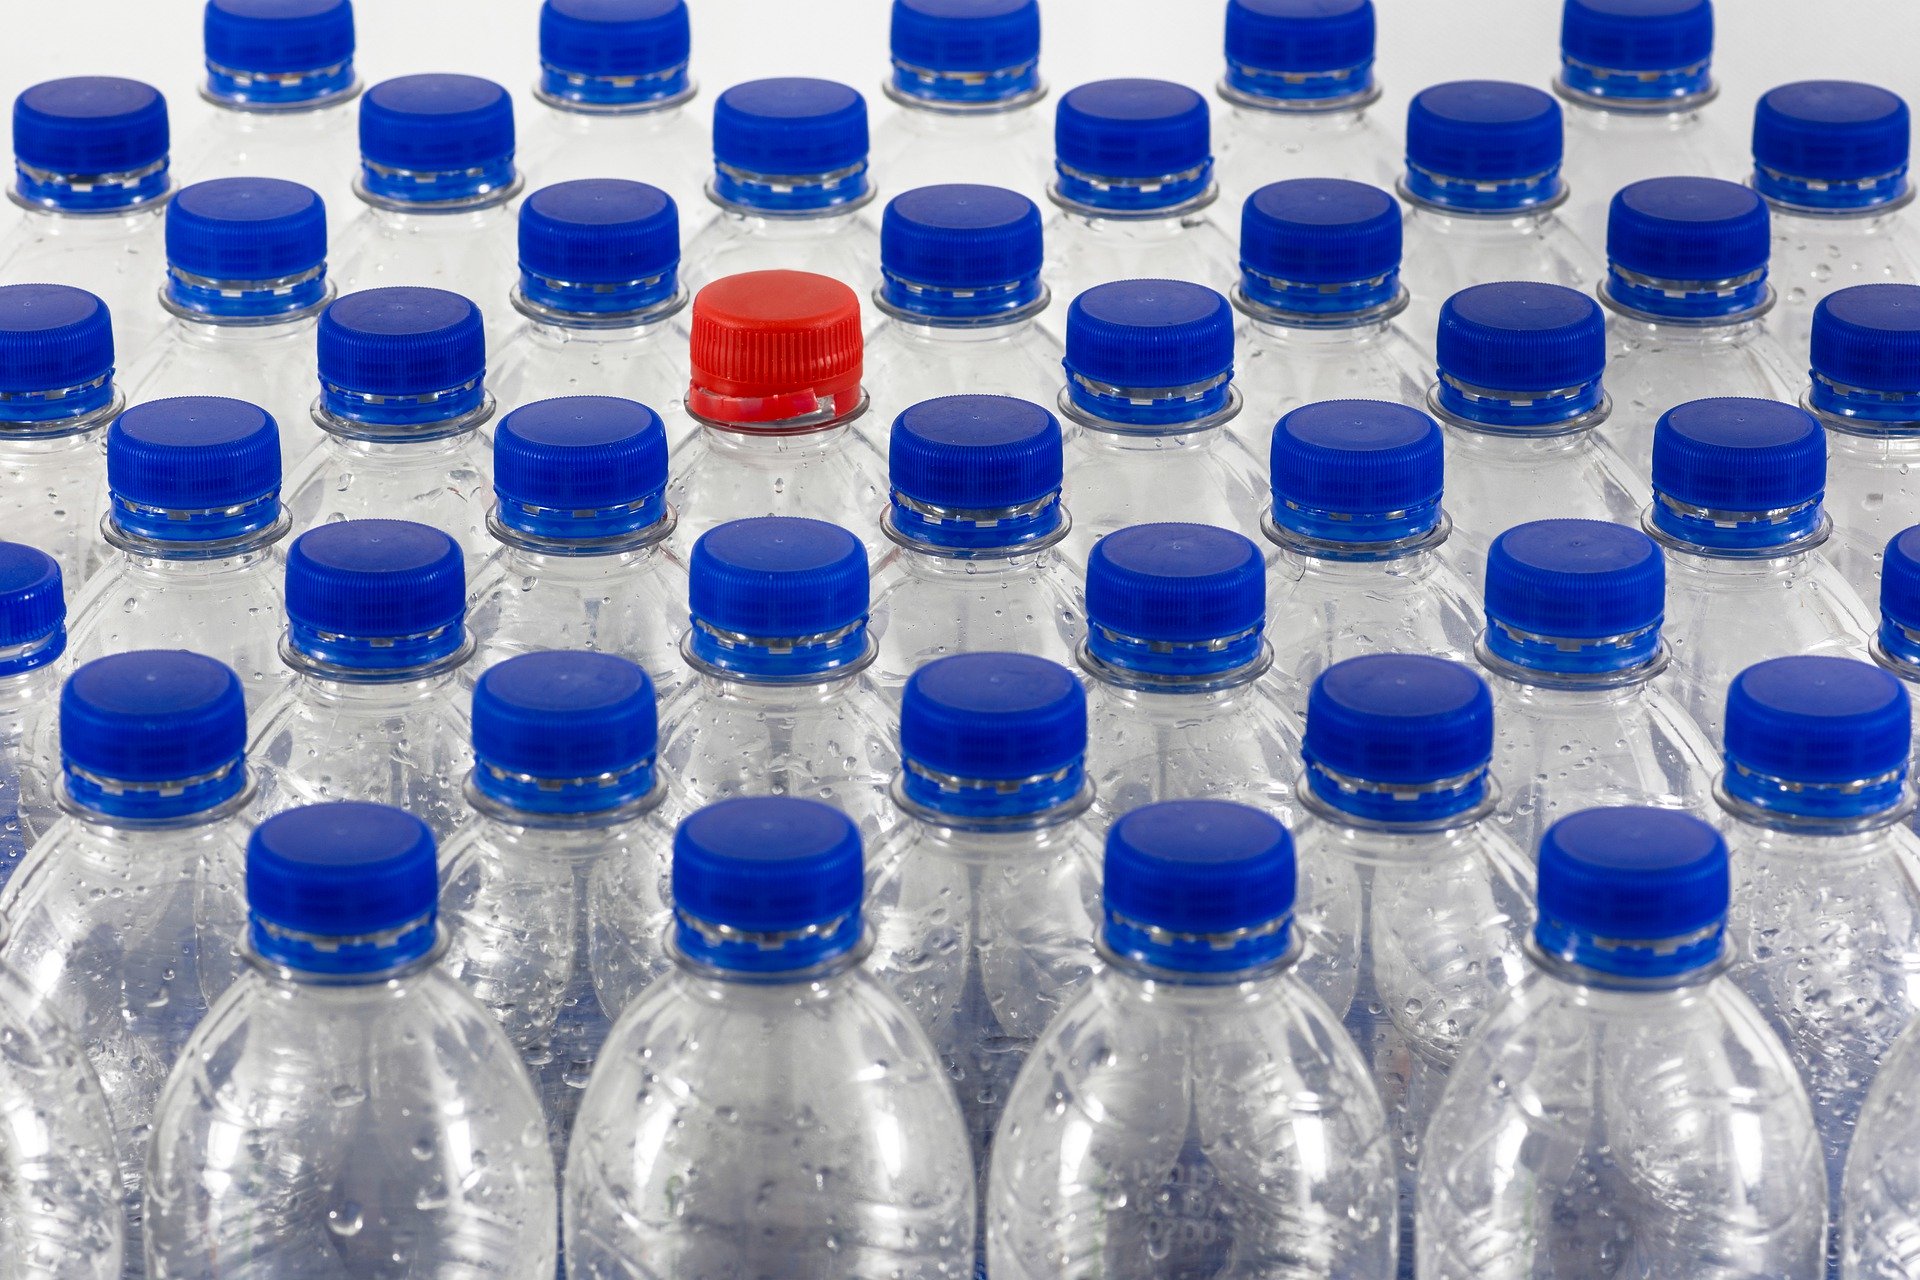 Bebiendo agua del grifo una persona puede consumir hasta 1,769 partículas de plástico